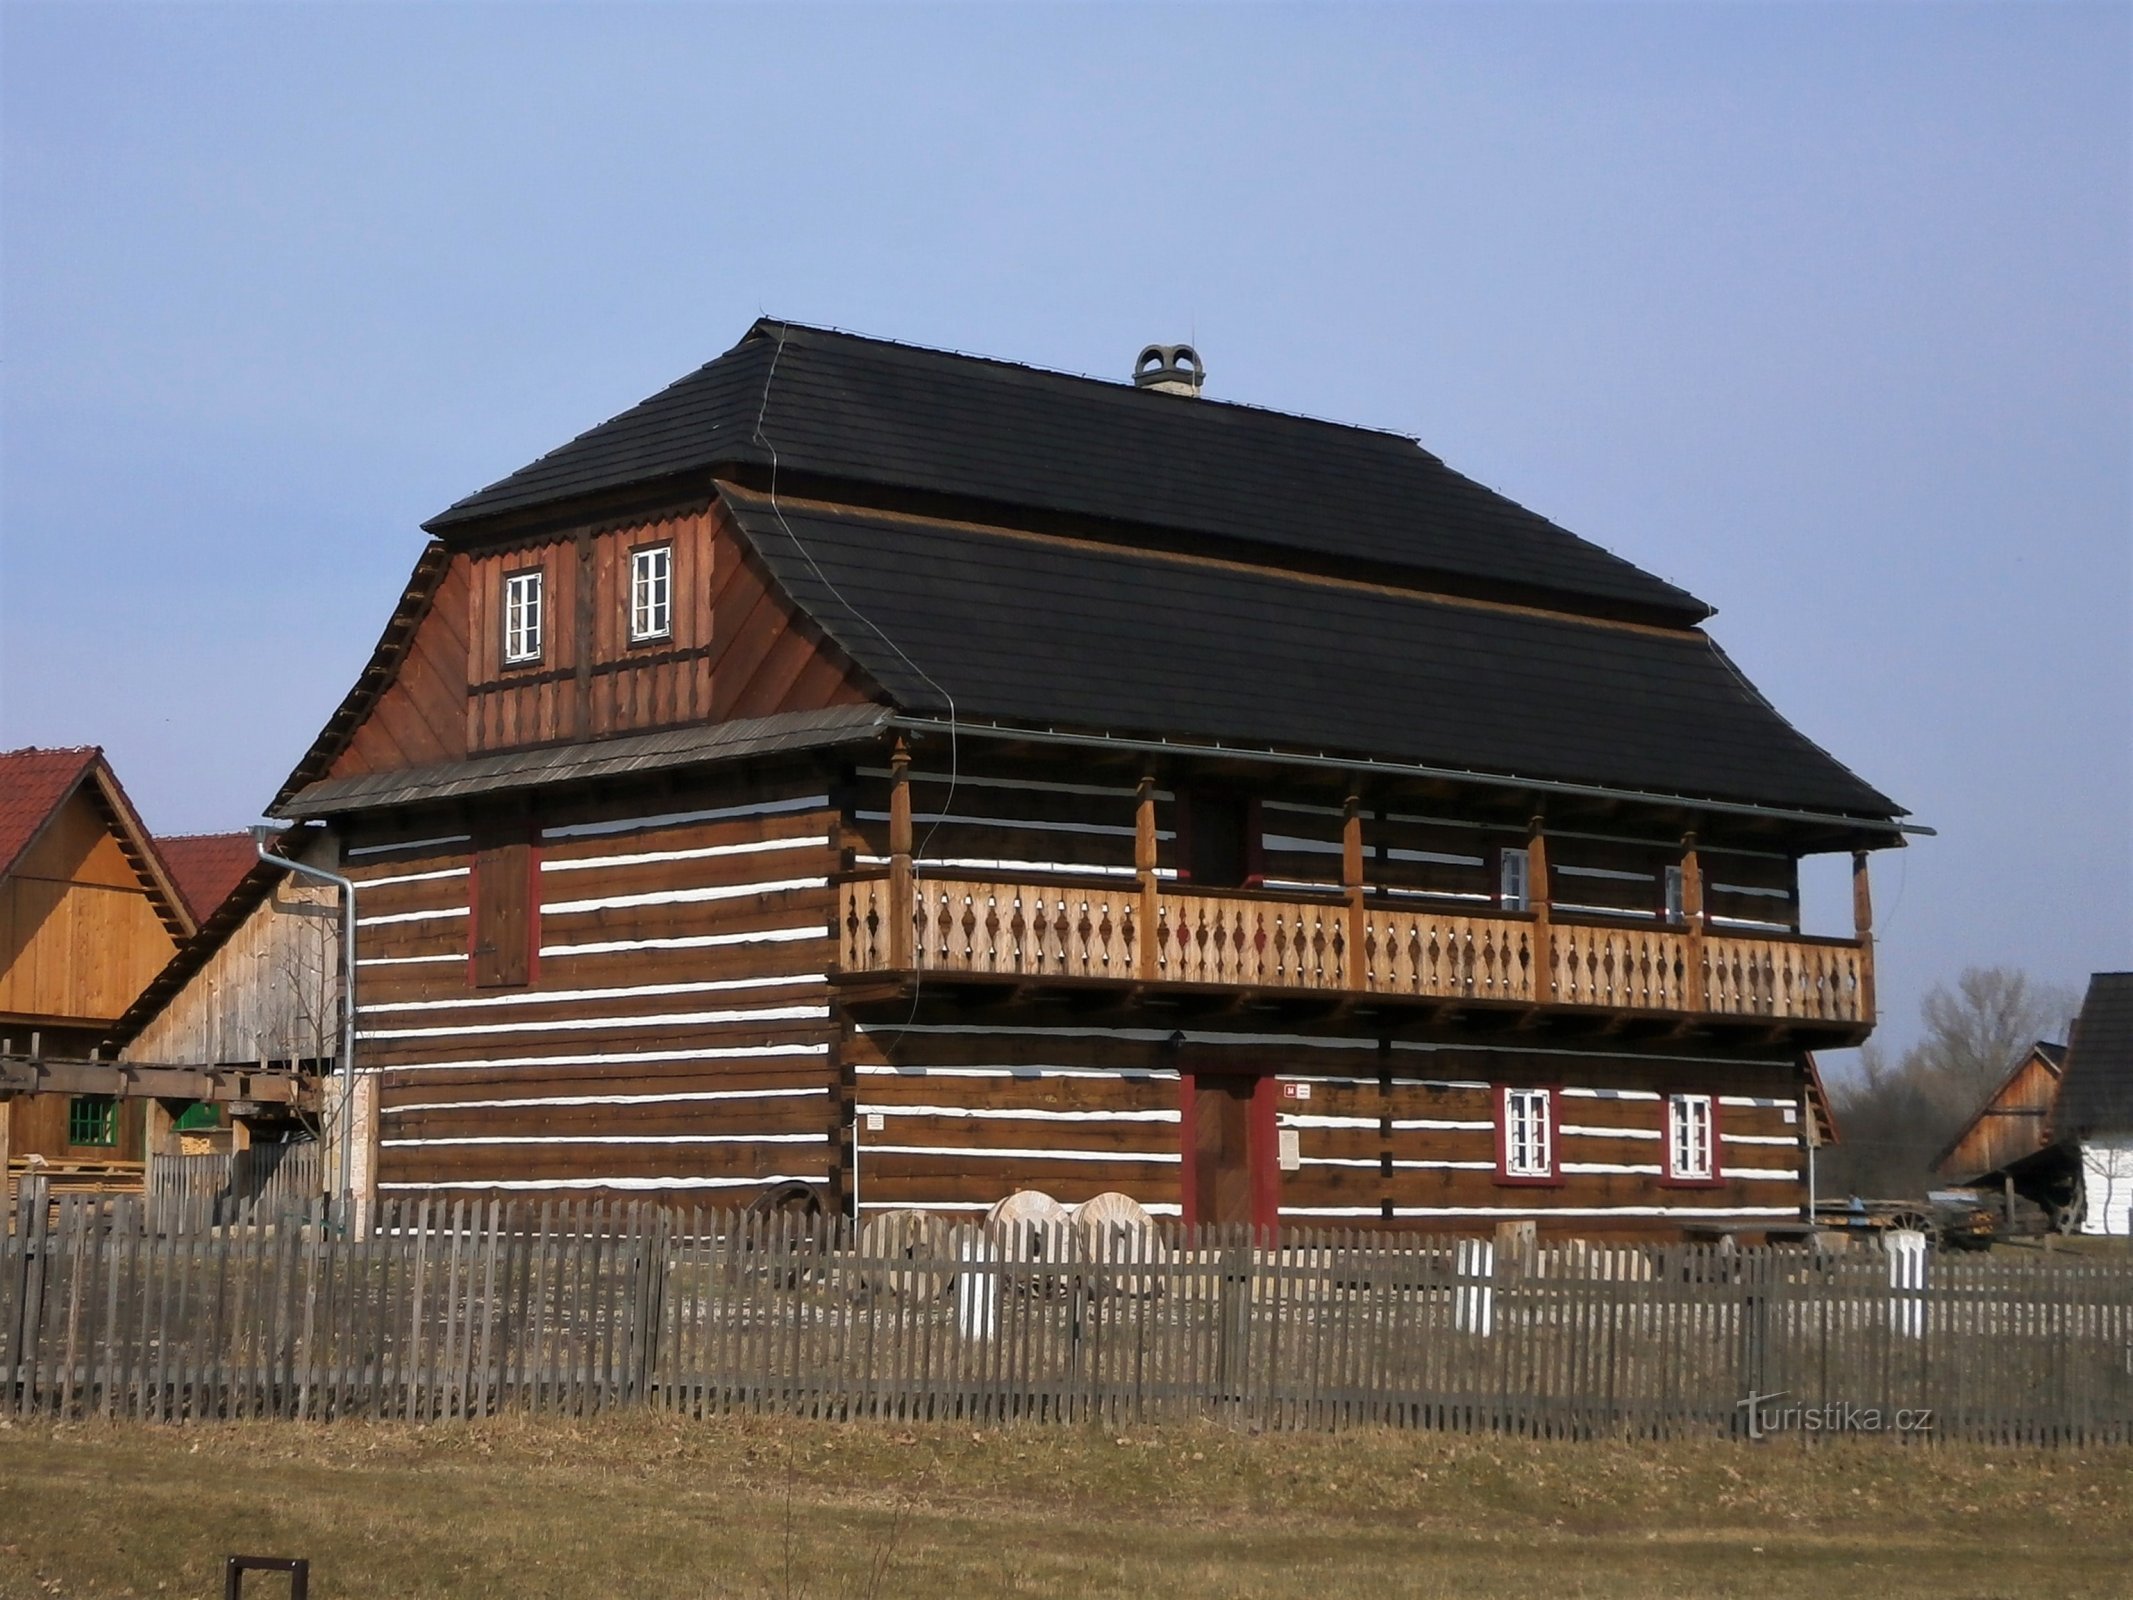 Réplique du moulin de Béleč dans le musée en plein air de Krňovick (13.3.2017 mai XNUMX)